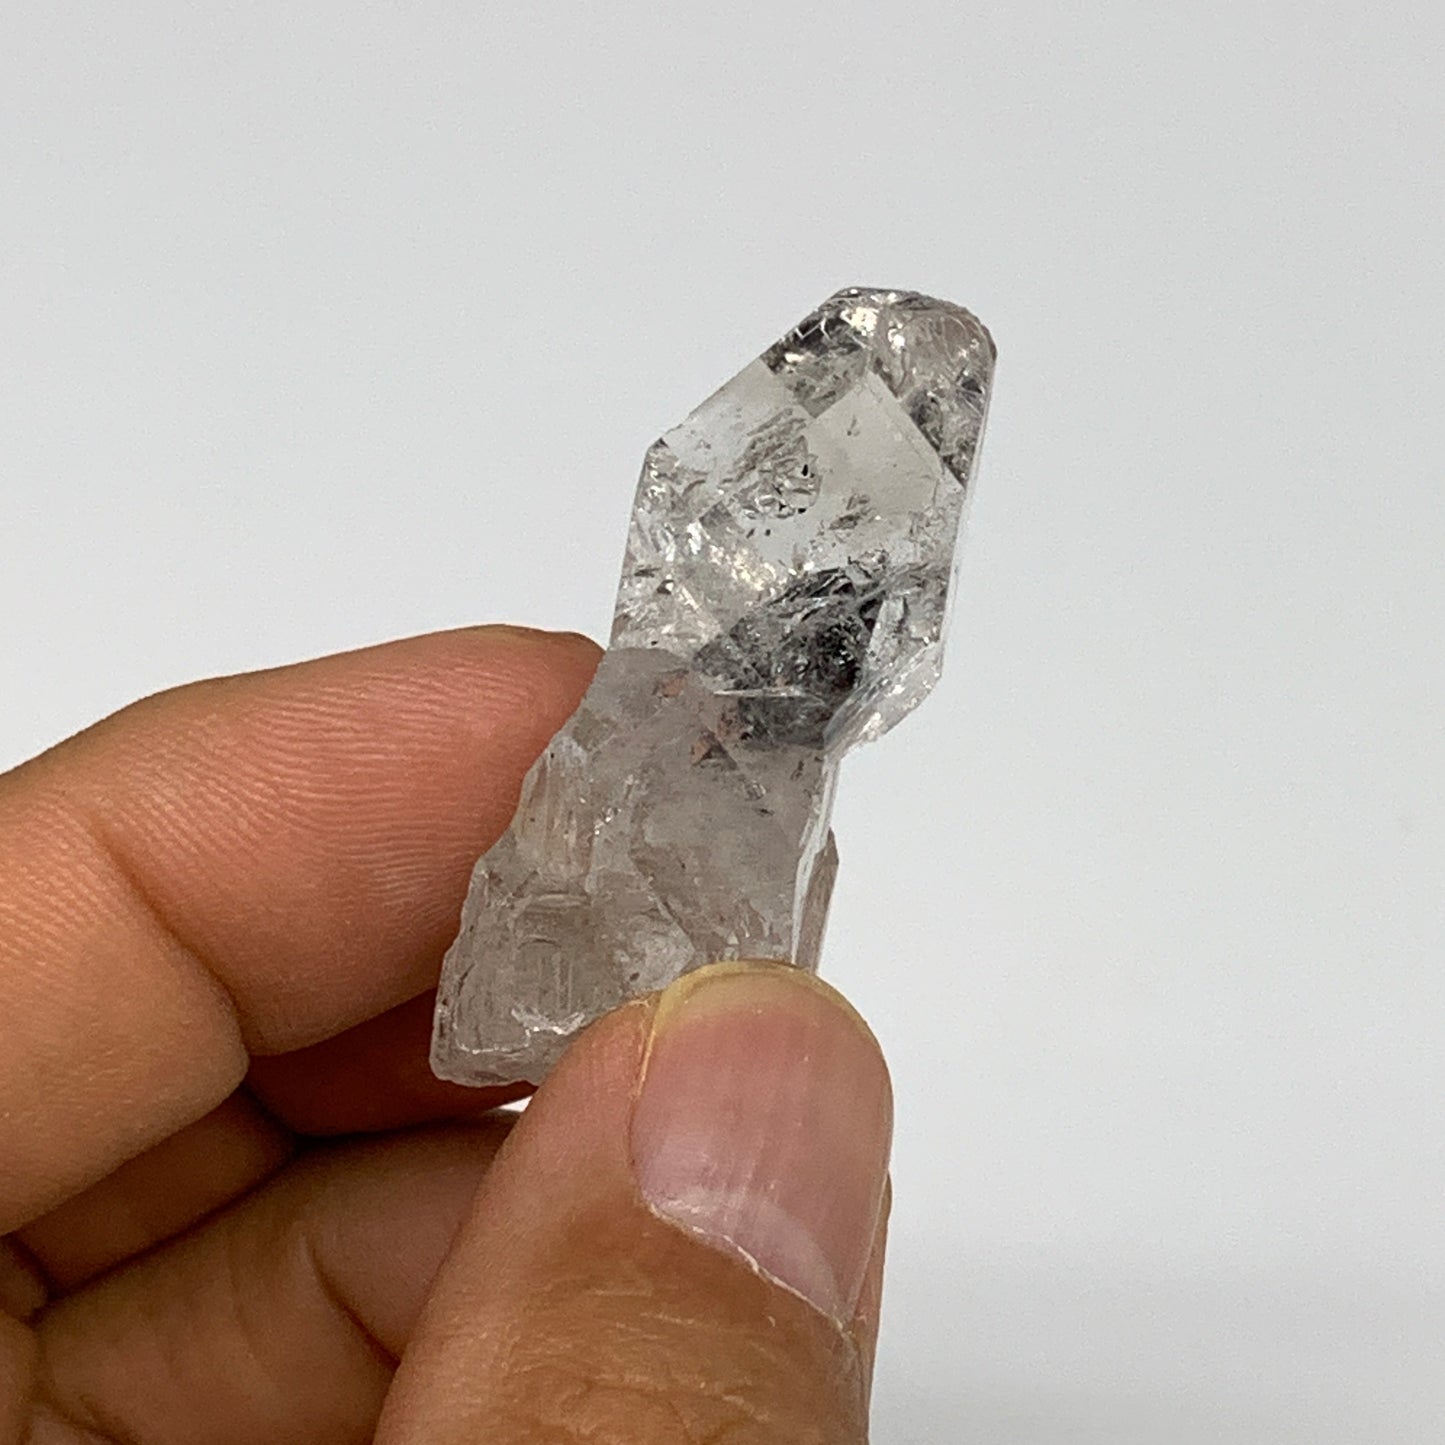 11.9g, 1.5"x0.8"x0.5", Natural Window Quartz Crystal Terminated @Pakistan,B27524